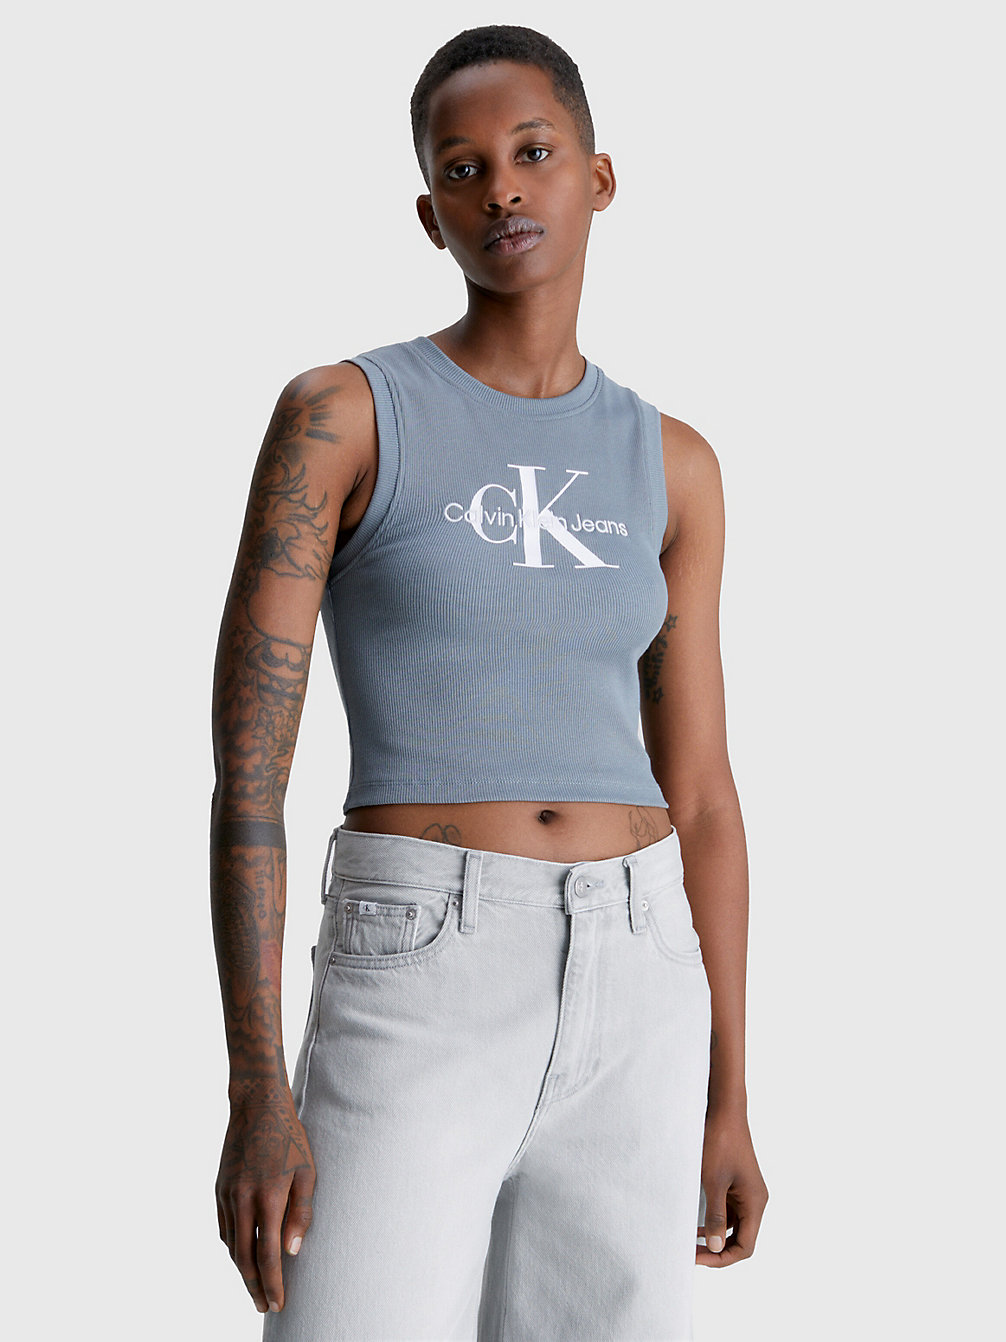 OVERCAST GREY Cropped Monogramm-Tanktop undefined Damen Calvin Klein